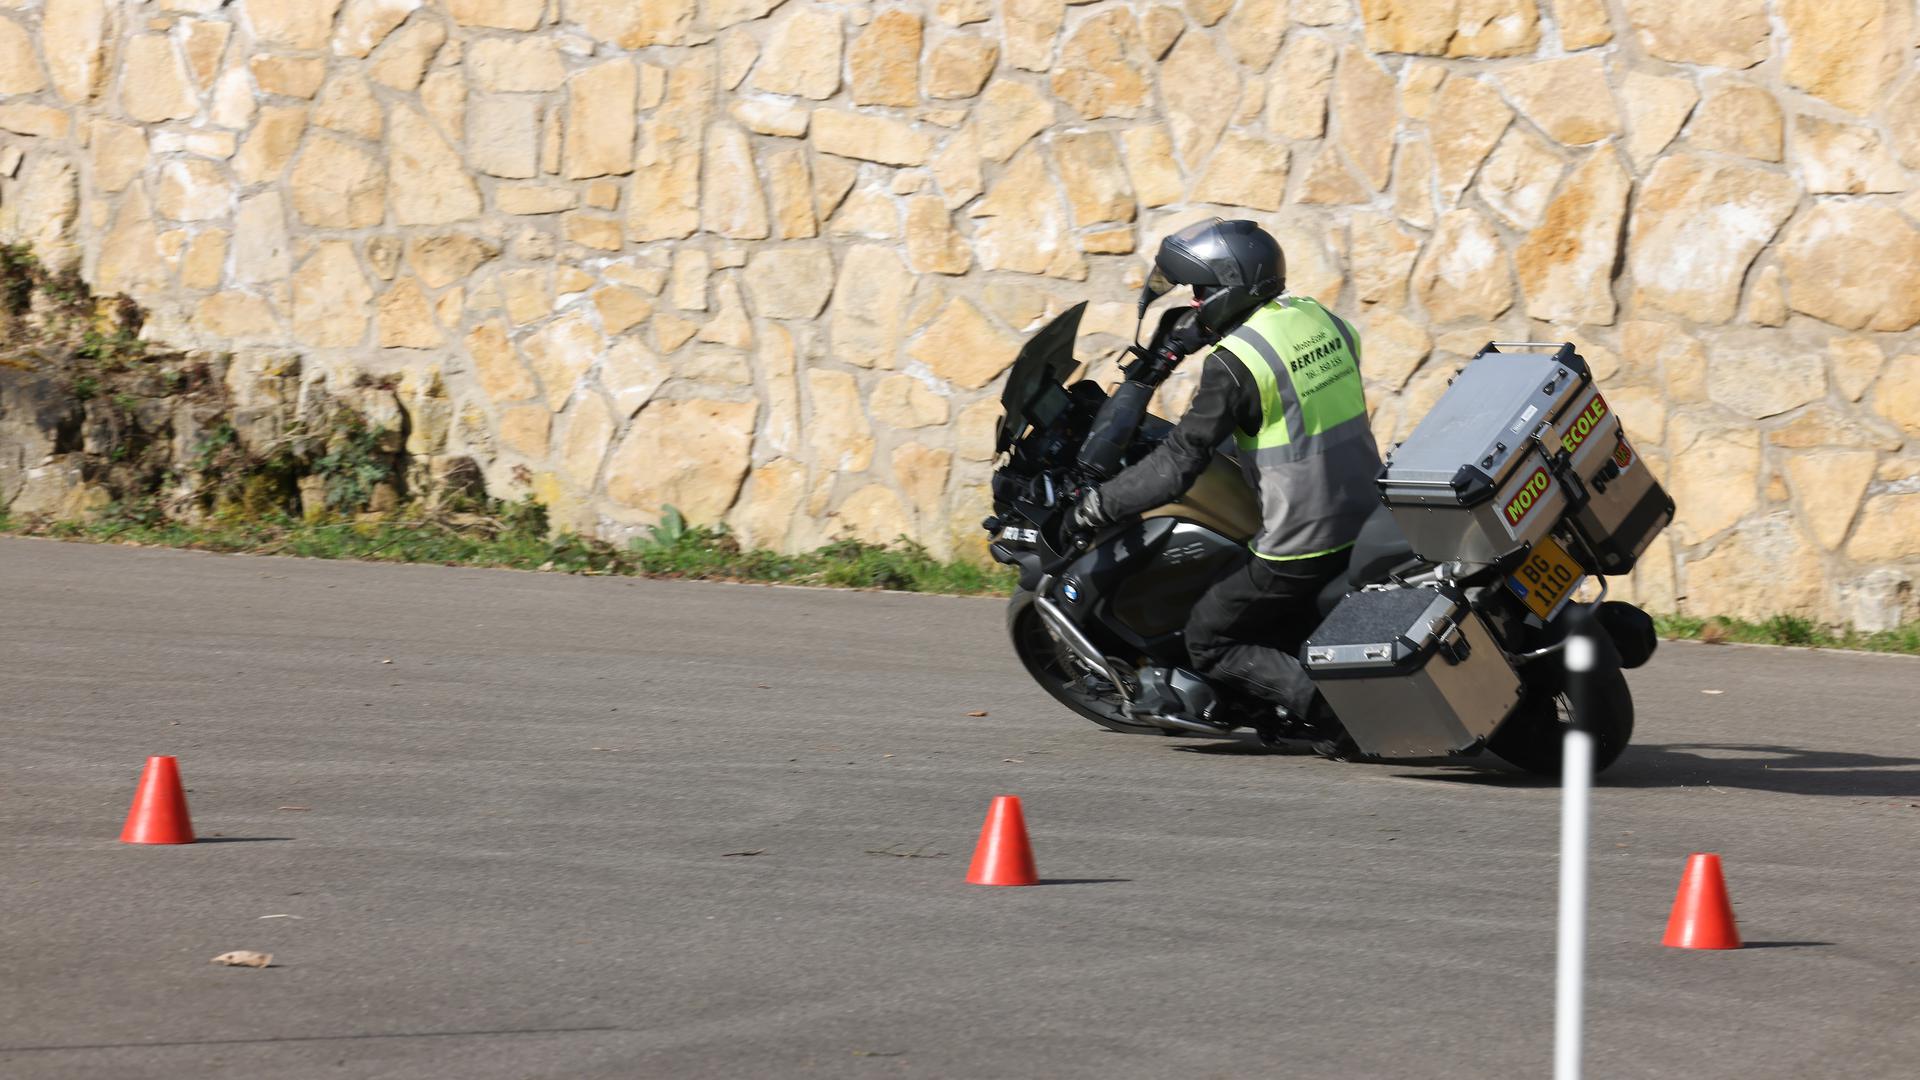 Tous les candidats au permis moto doivent réussir le parcours d'obstacles lors de l'examen de conduite. 